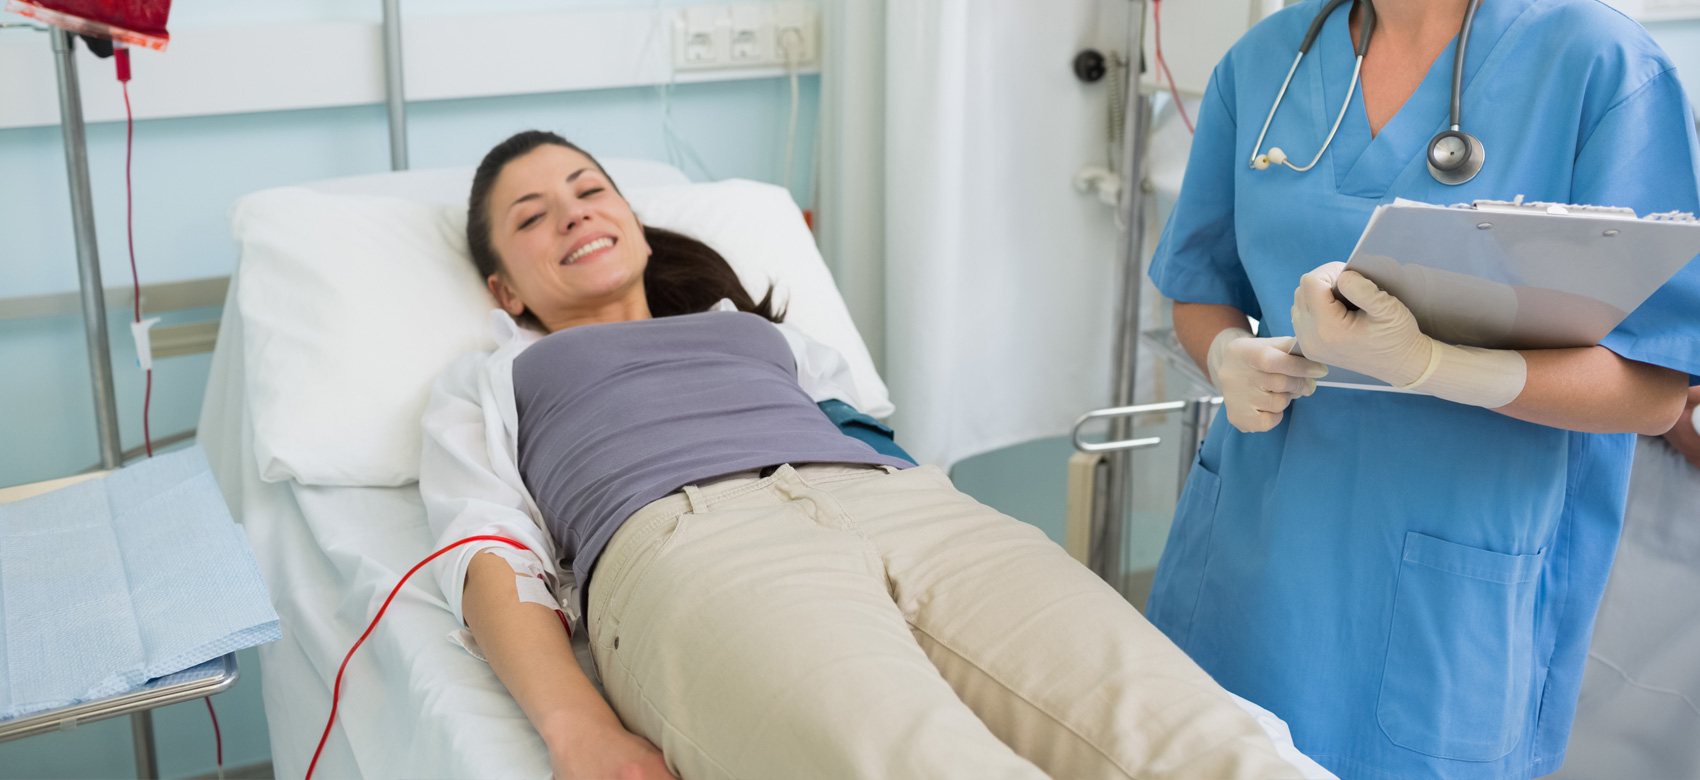 Брюнетка медсестра с громадными дойками лечит пациента специальными процедурами